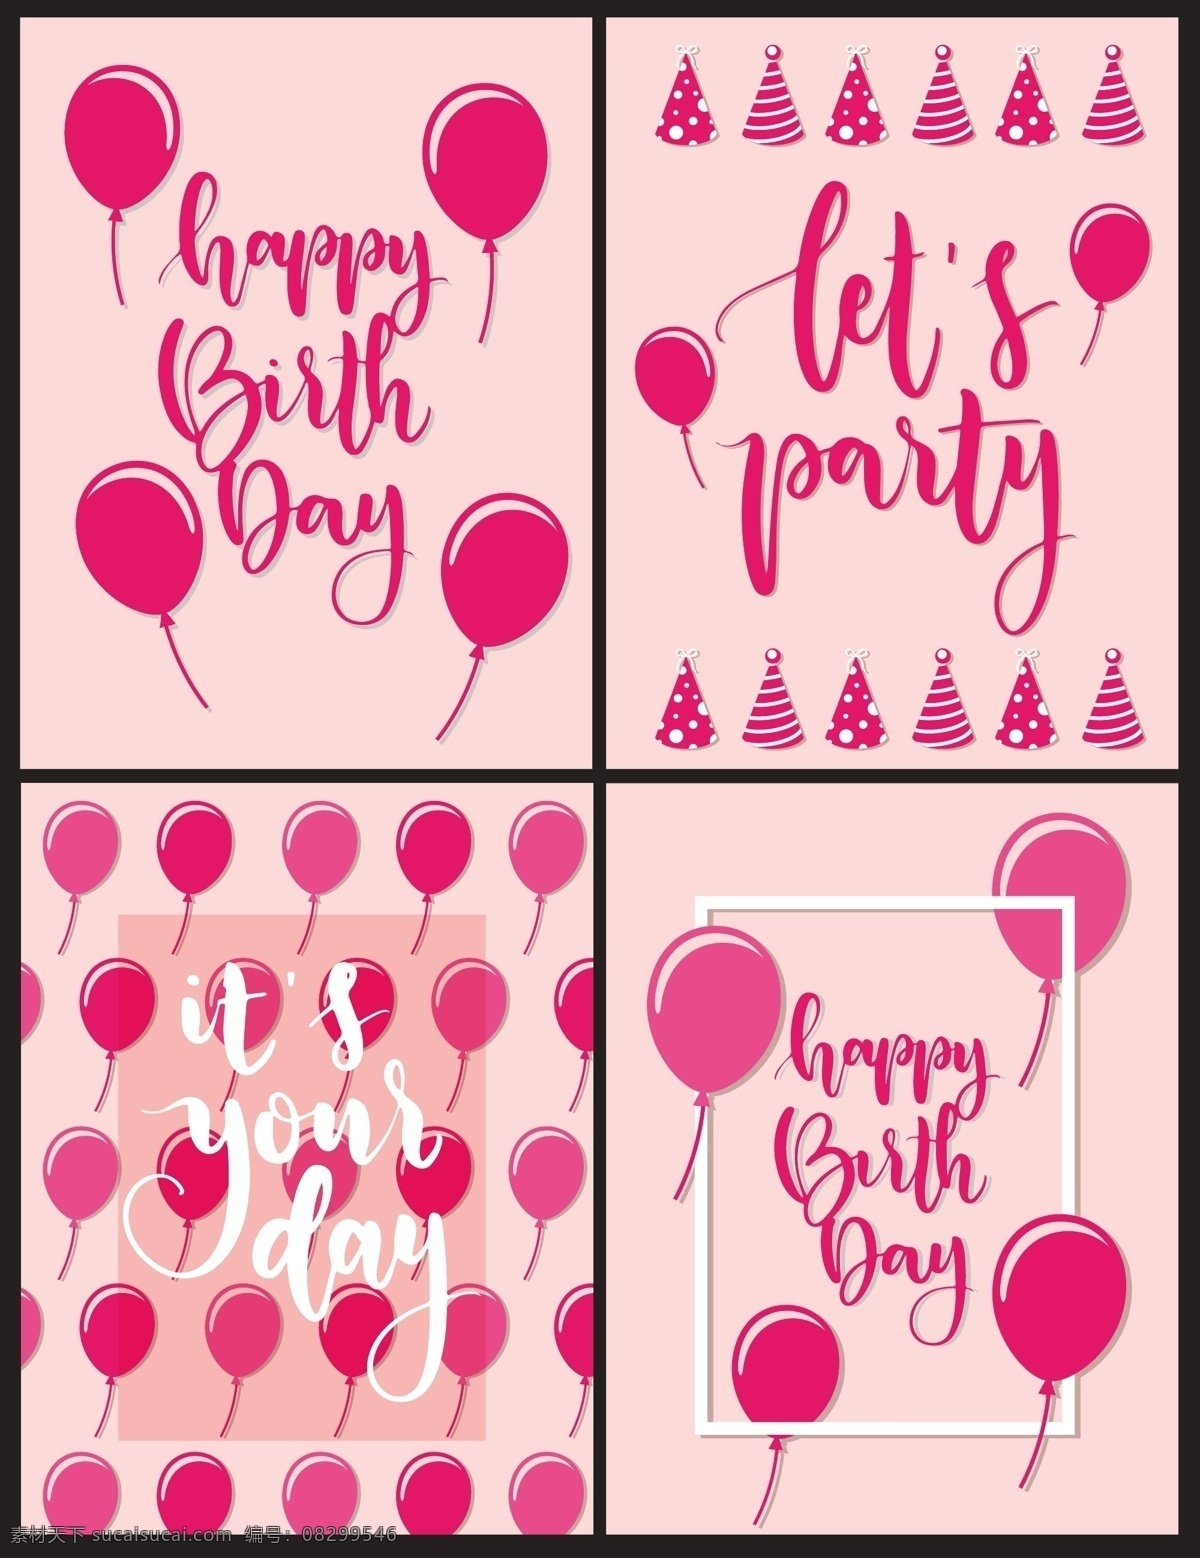 生日 派对 粉色 图案 矢量 字体 英文字体 气球 矢量素材 庆生